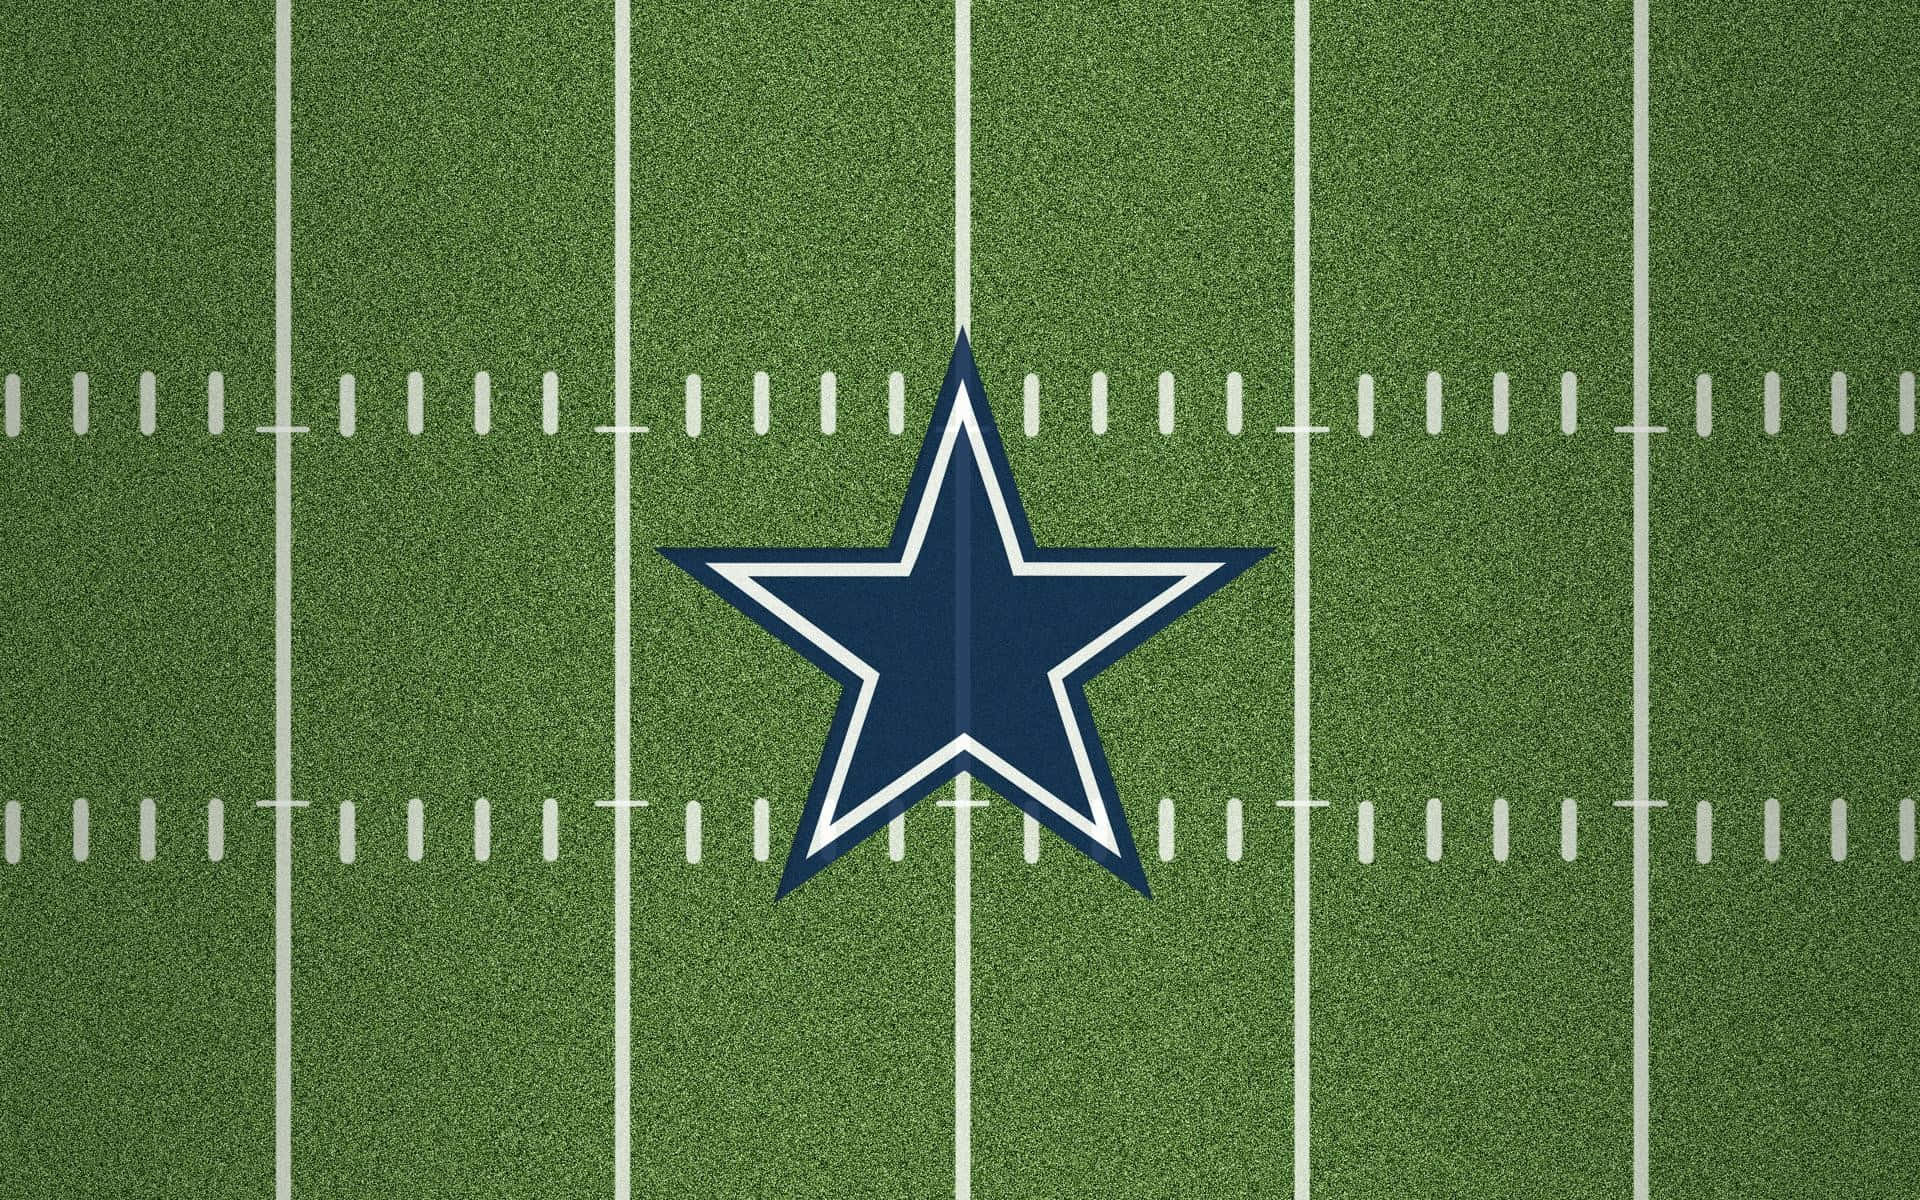 Dallas Cowboys Staron Field Wallpaper